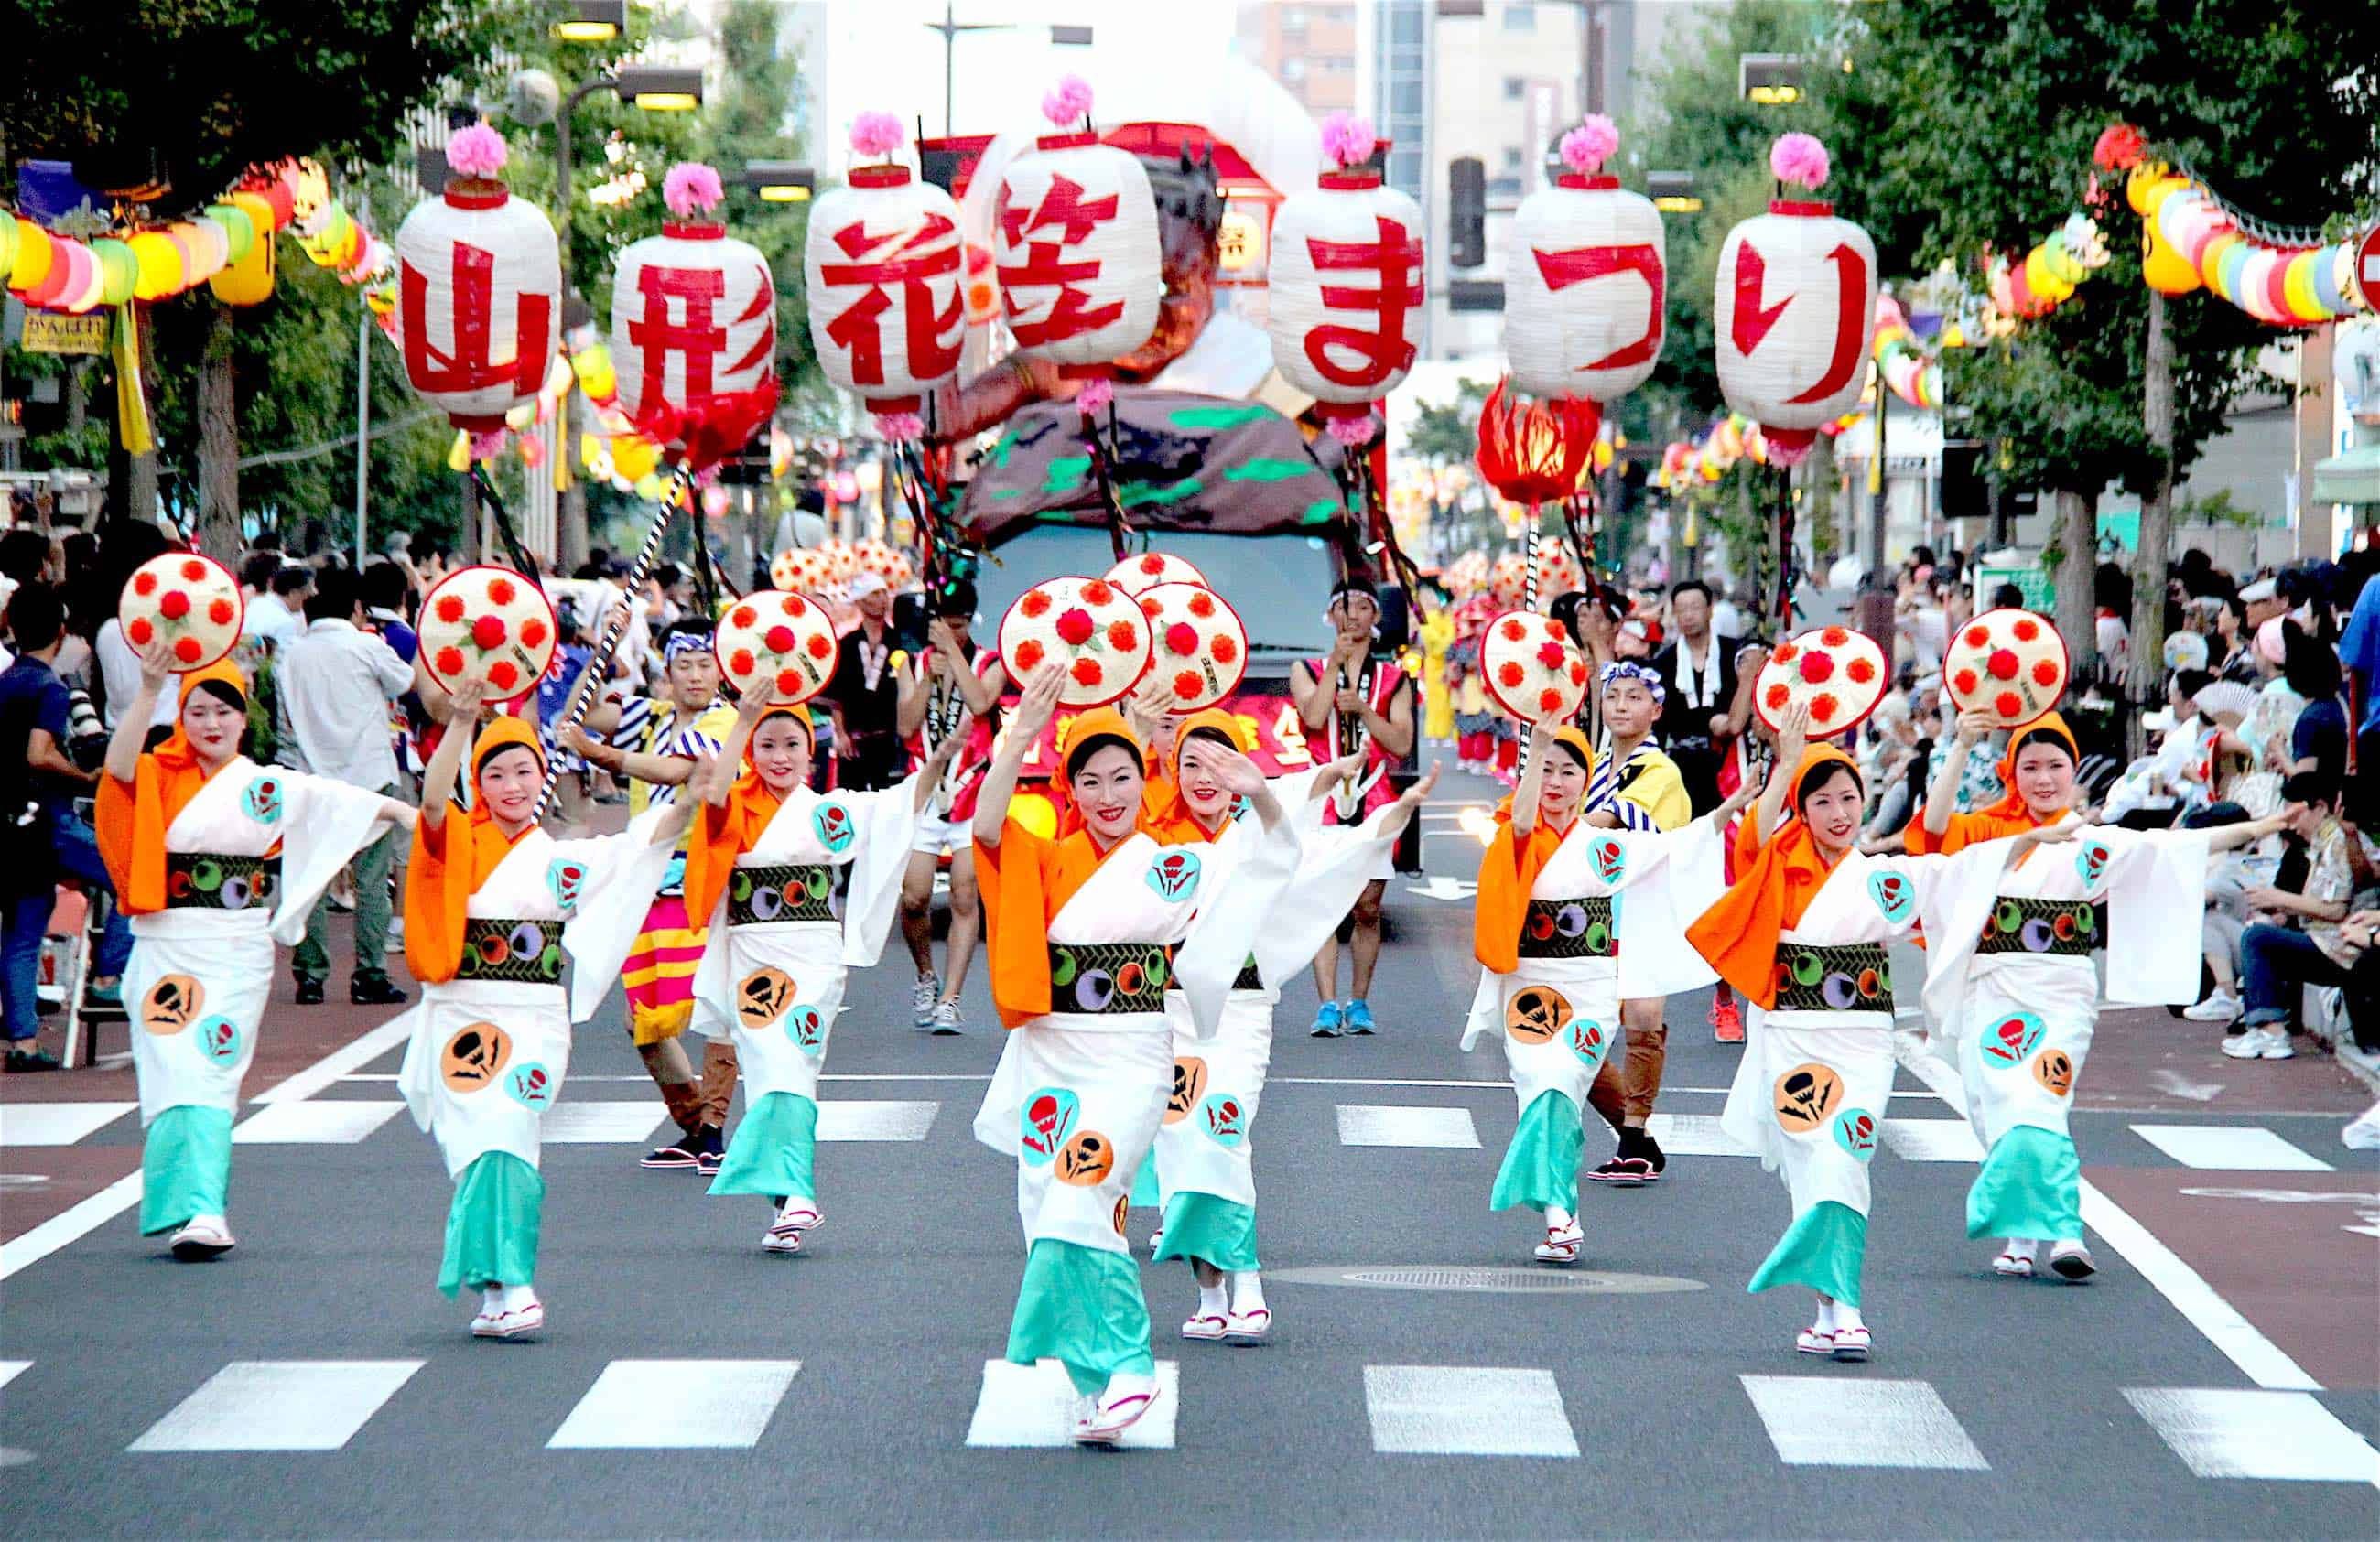 เทศกาล หน้าร้อน ภูมิภาค โทโฮคุ : เทศกาลยามากาตะฮานะกาสะ (Yamagata Hanagasa Festival)